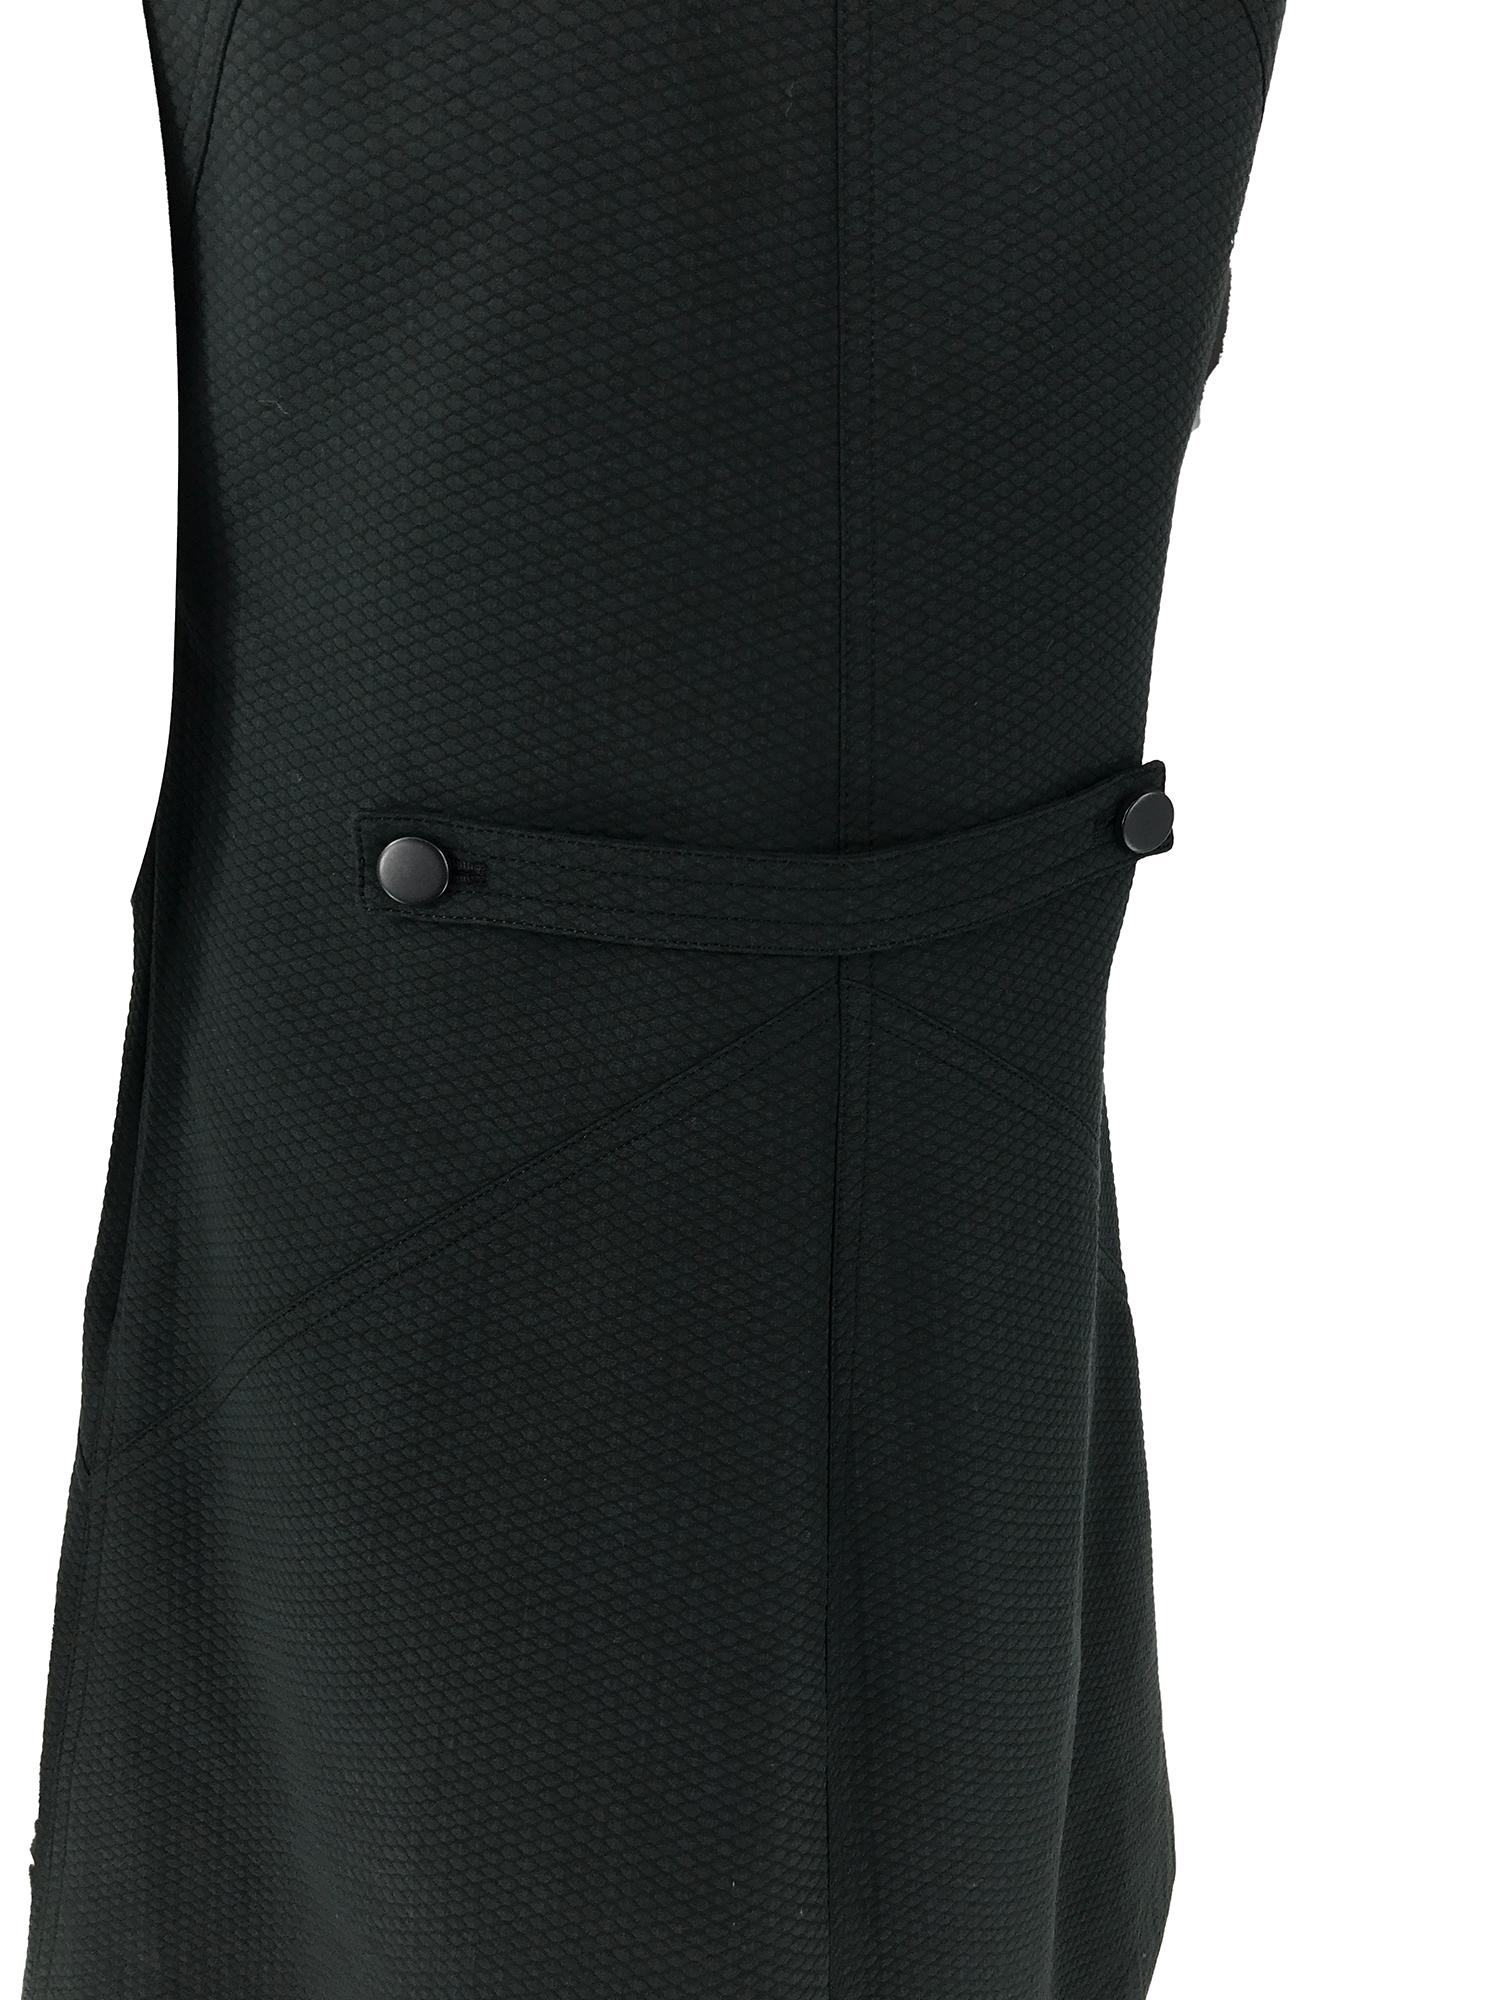 Courreges 100% Black Diamond Design Cotton A Line Shift Dress 40 1980s 3